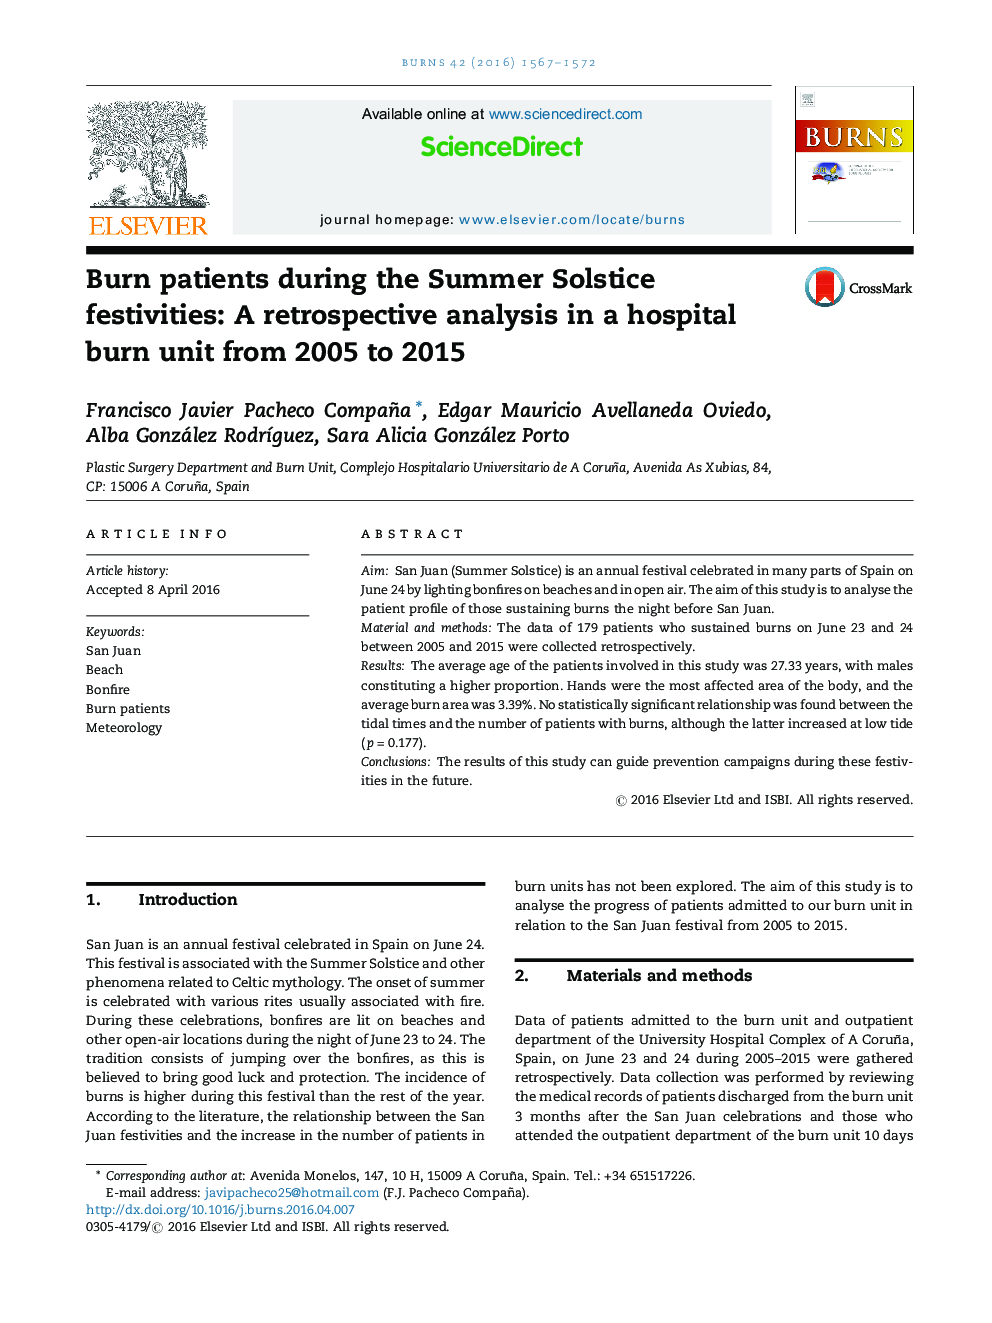 سوزاندن بیماران در جشن های تابستانه تابستونی: یک بررسی گذشته نگر در بخش سوختگی بیمارستان از سال 2005 تا 2015 